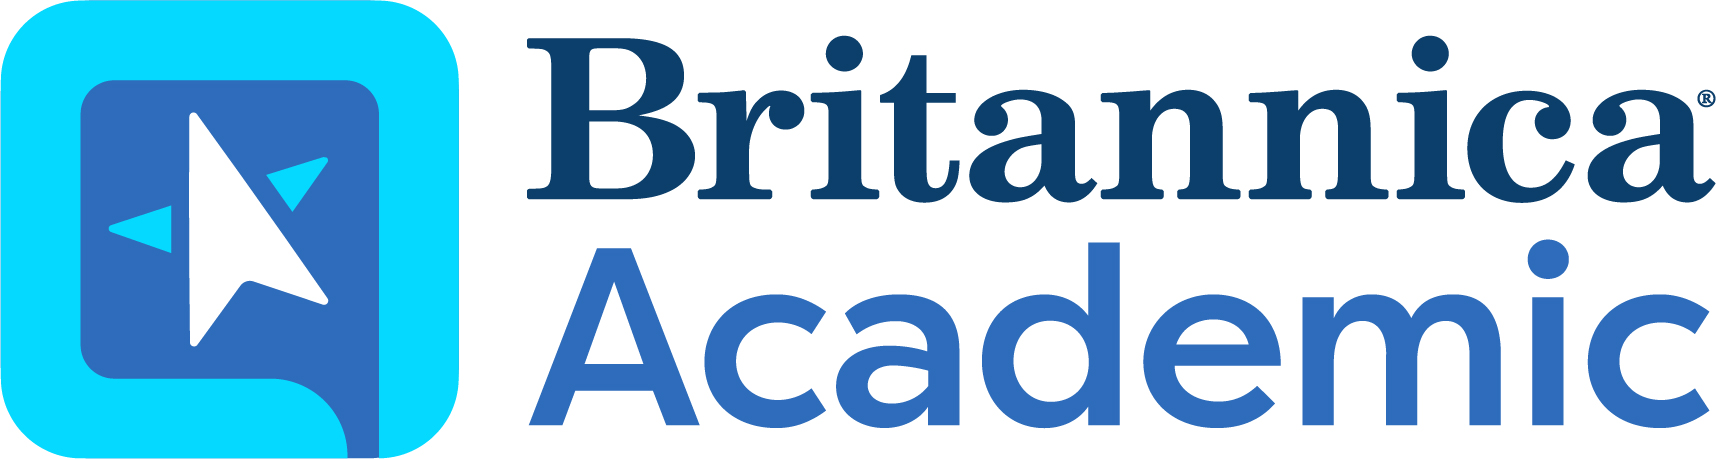 Britannica Academic Logo - Britannica Digital Learning